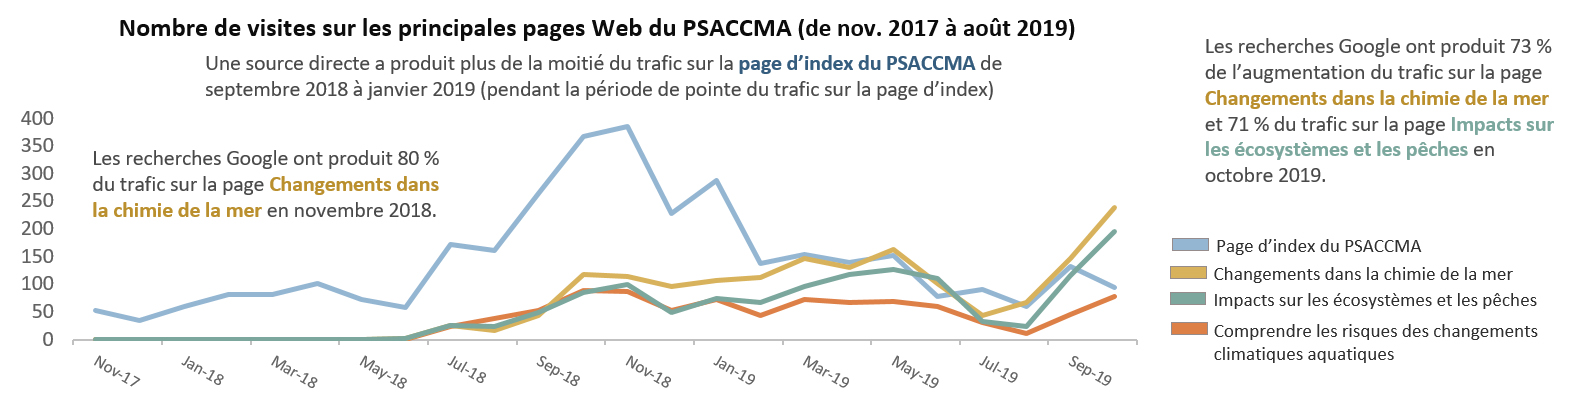 Le nombre de visites sur le site Web du PSACCMA varie d’une page à l’autre